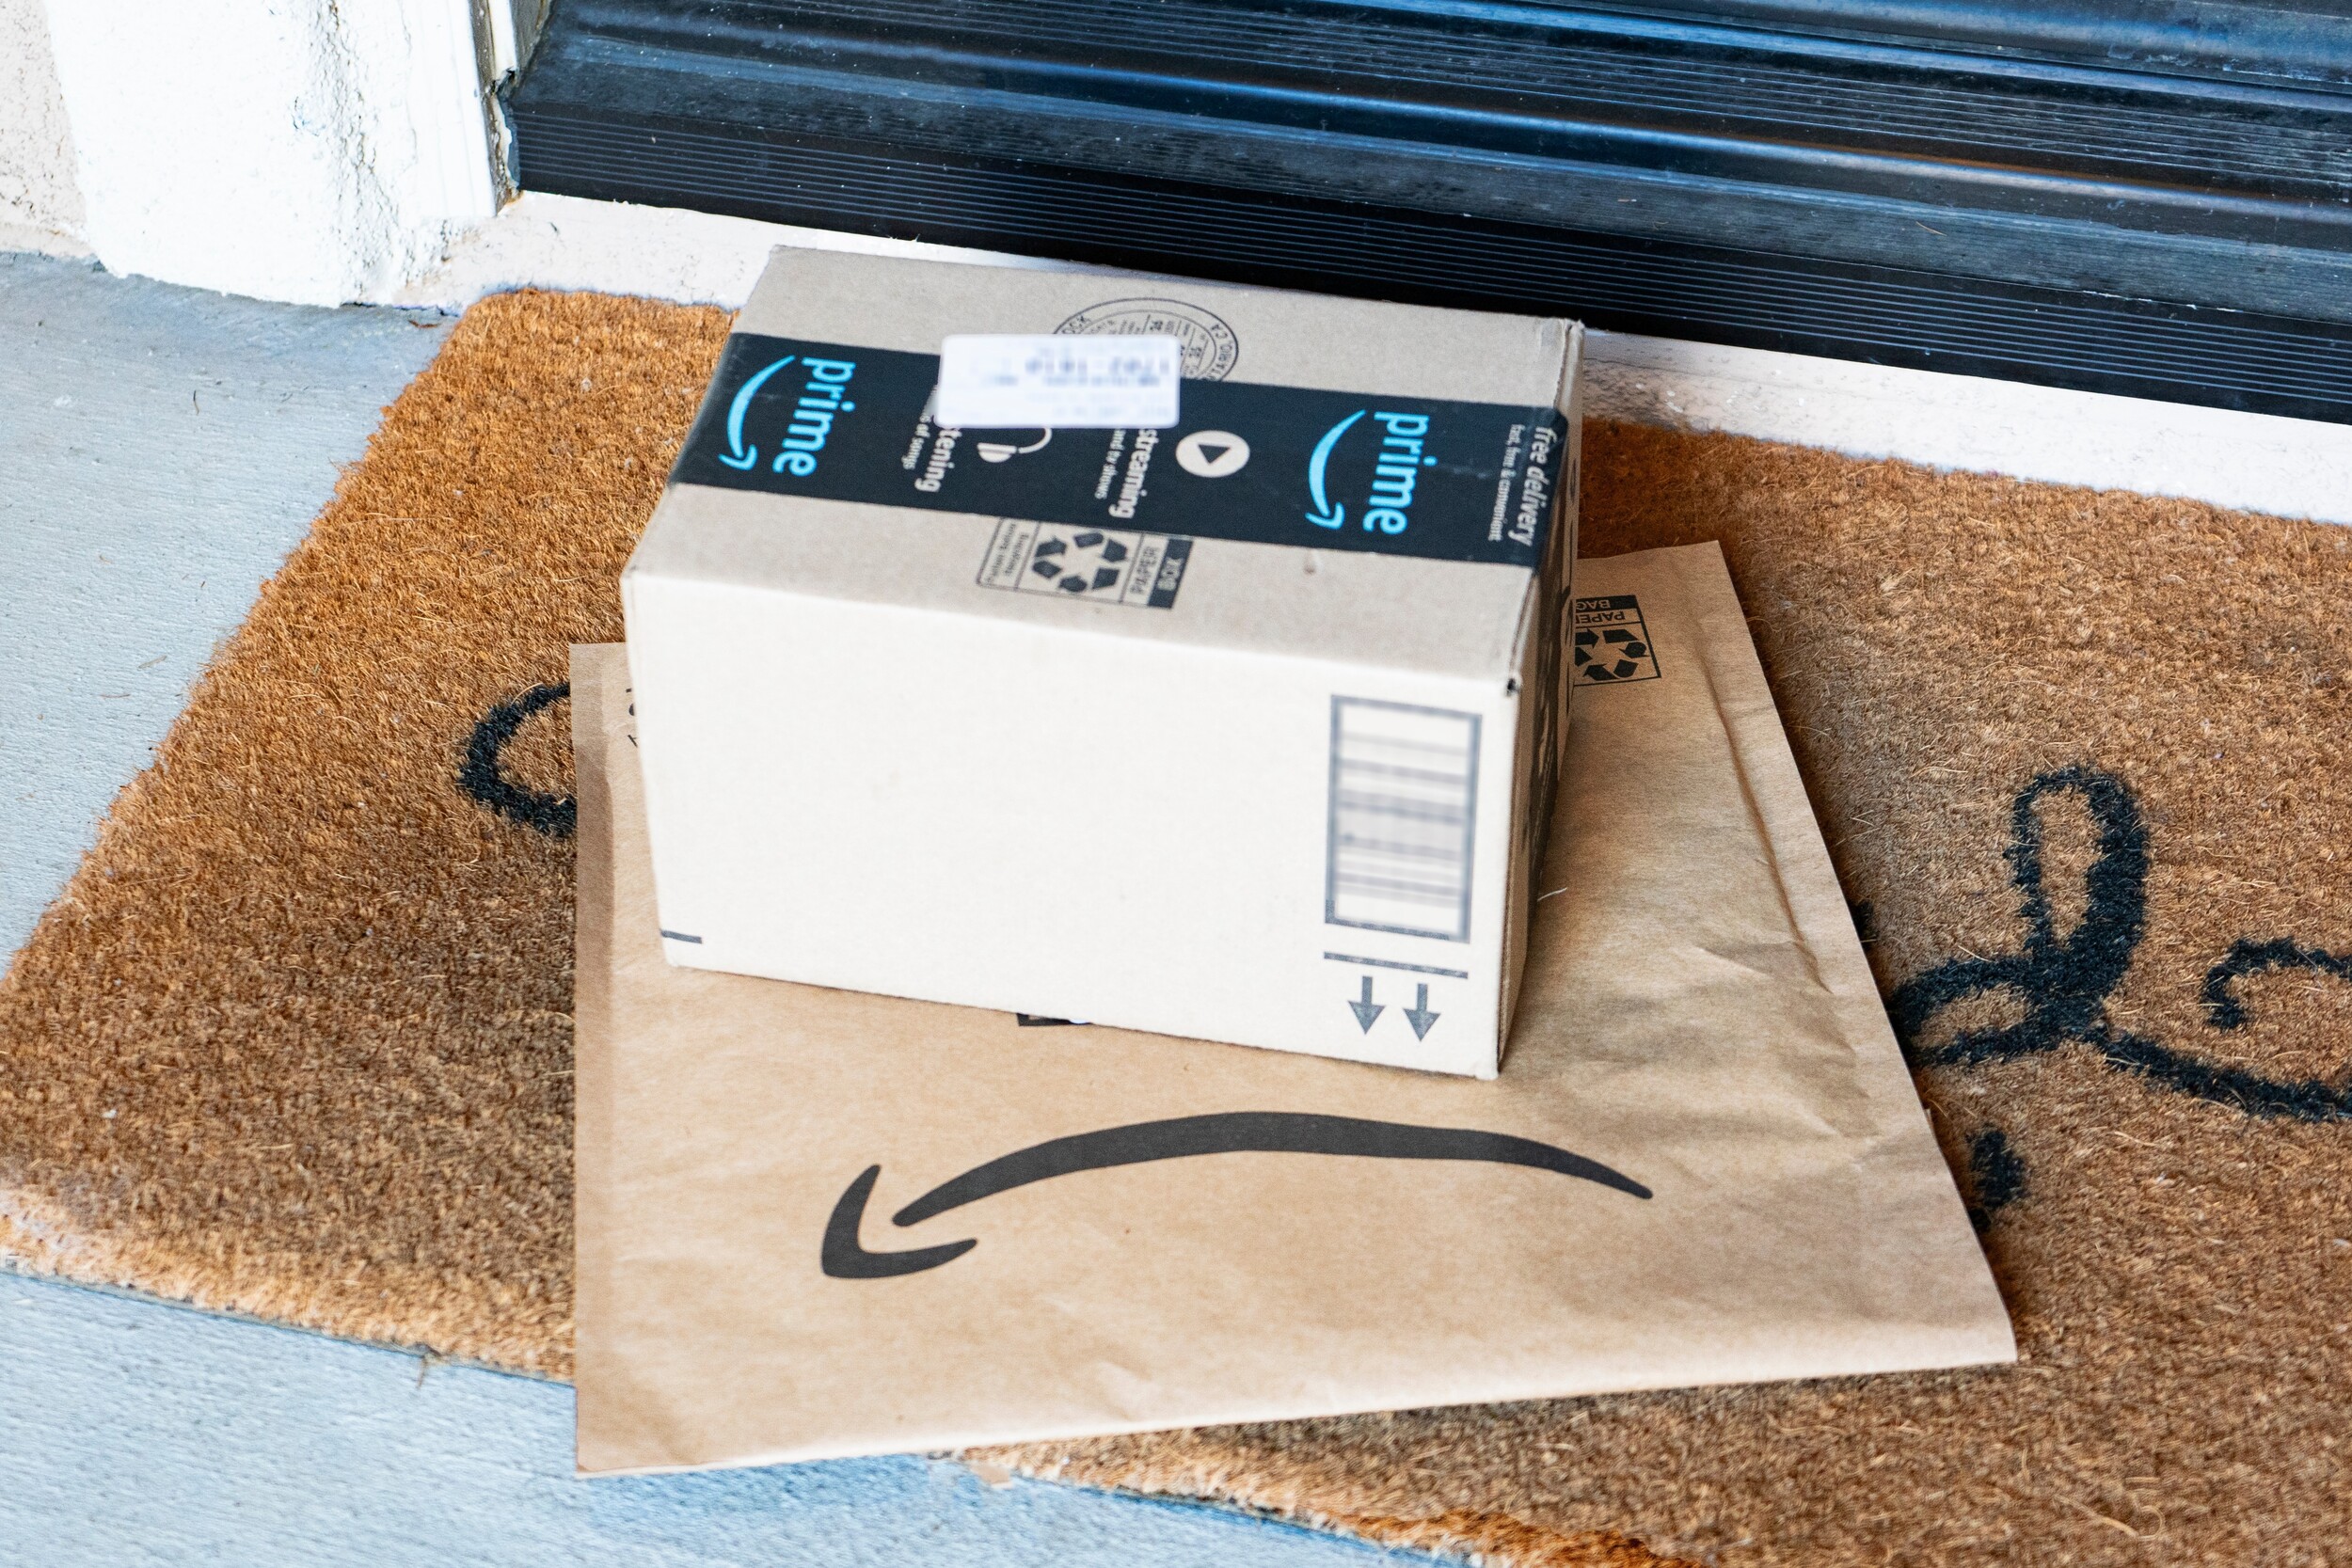 Des produits Amazon à tester gratuitement ? Attention à cette vieille technique employée pour vous escroquer